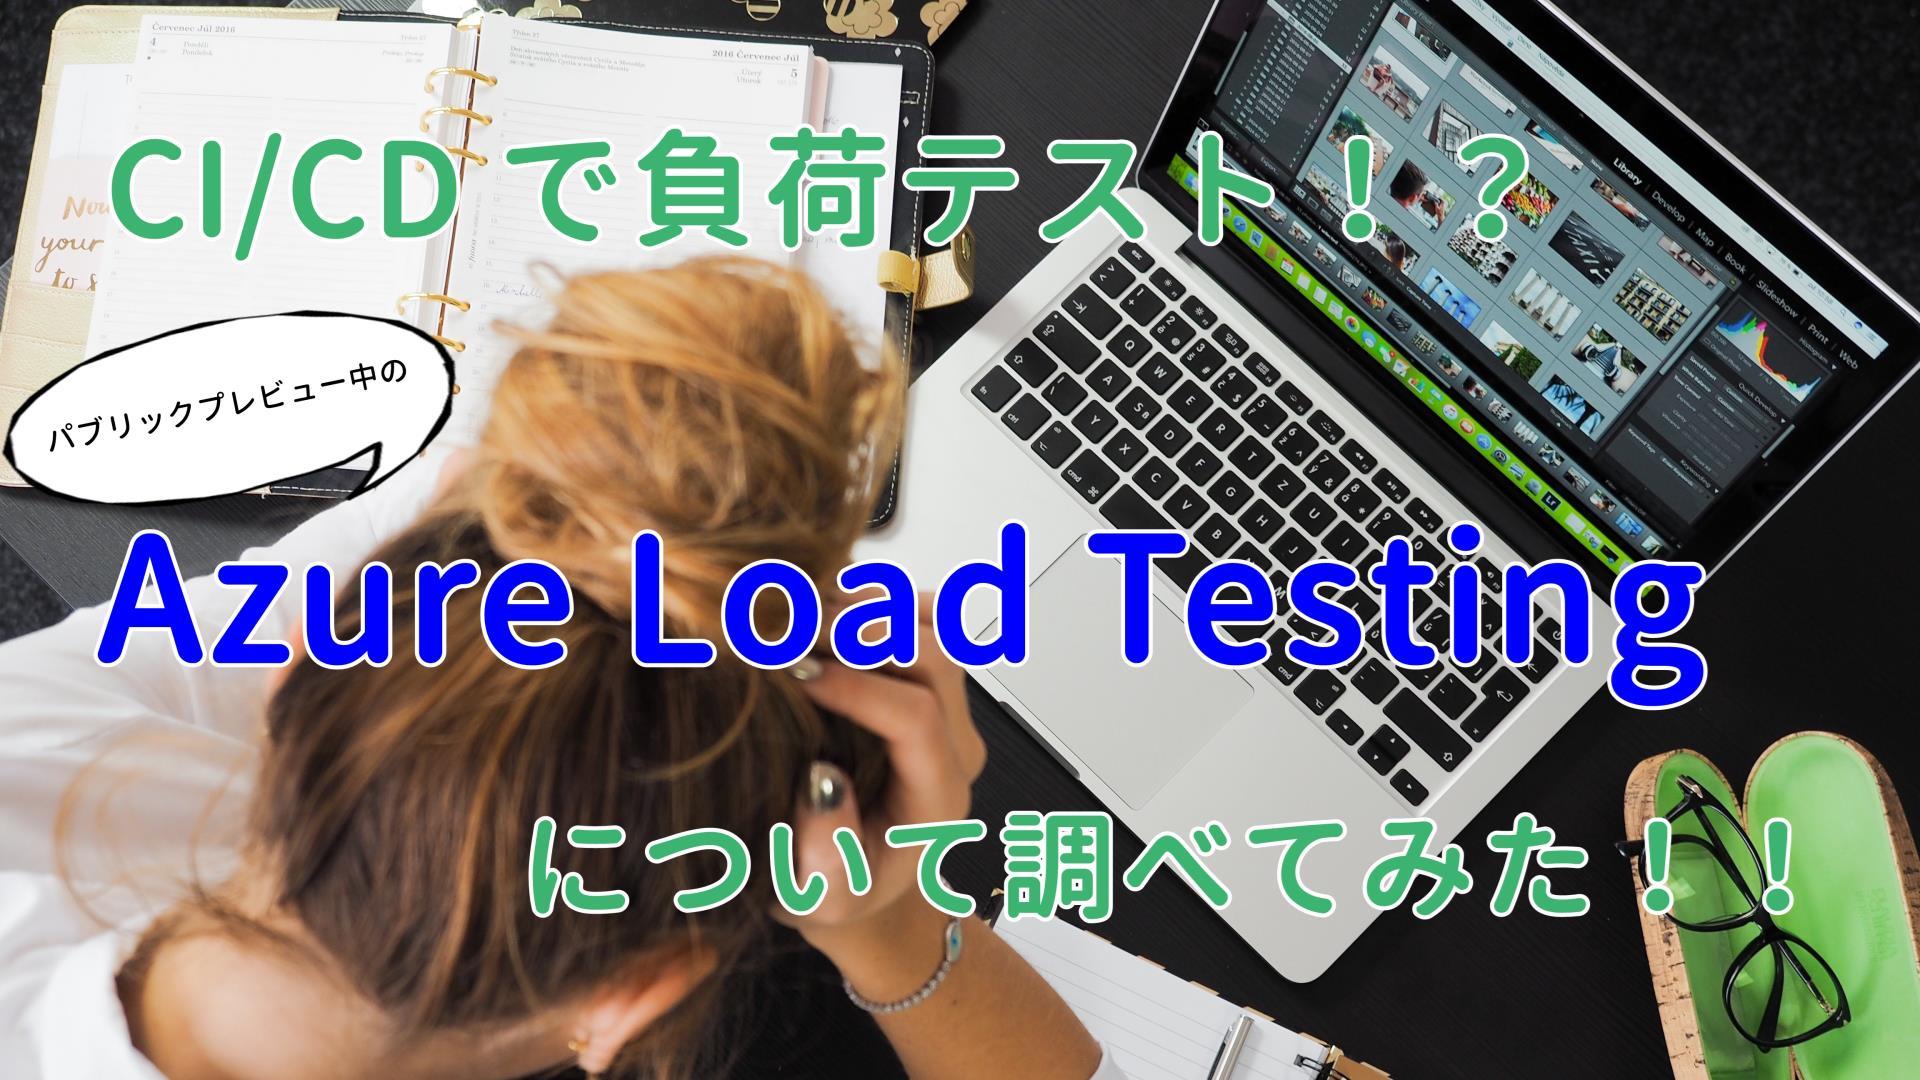 CI/CD で負荷テスト！？ パブリックプレビュー中の Azure Load Testing について調べてみた！！ #Azureリレー